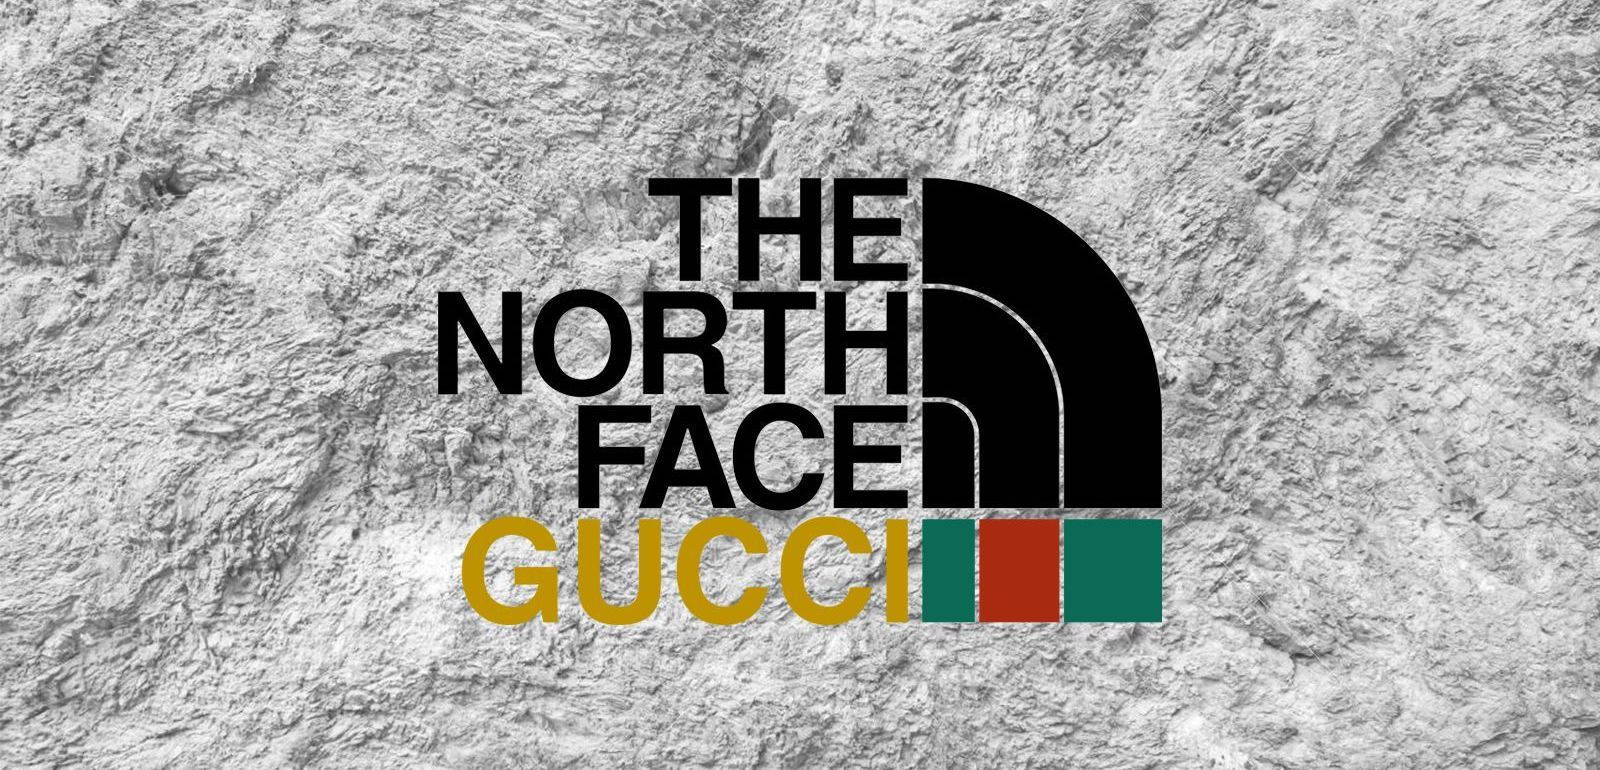 Colaboraçãode Logotipo De Designer Da North Face E Gucci. Papel de Parede